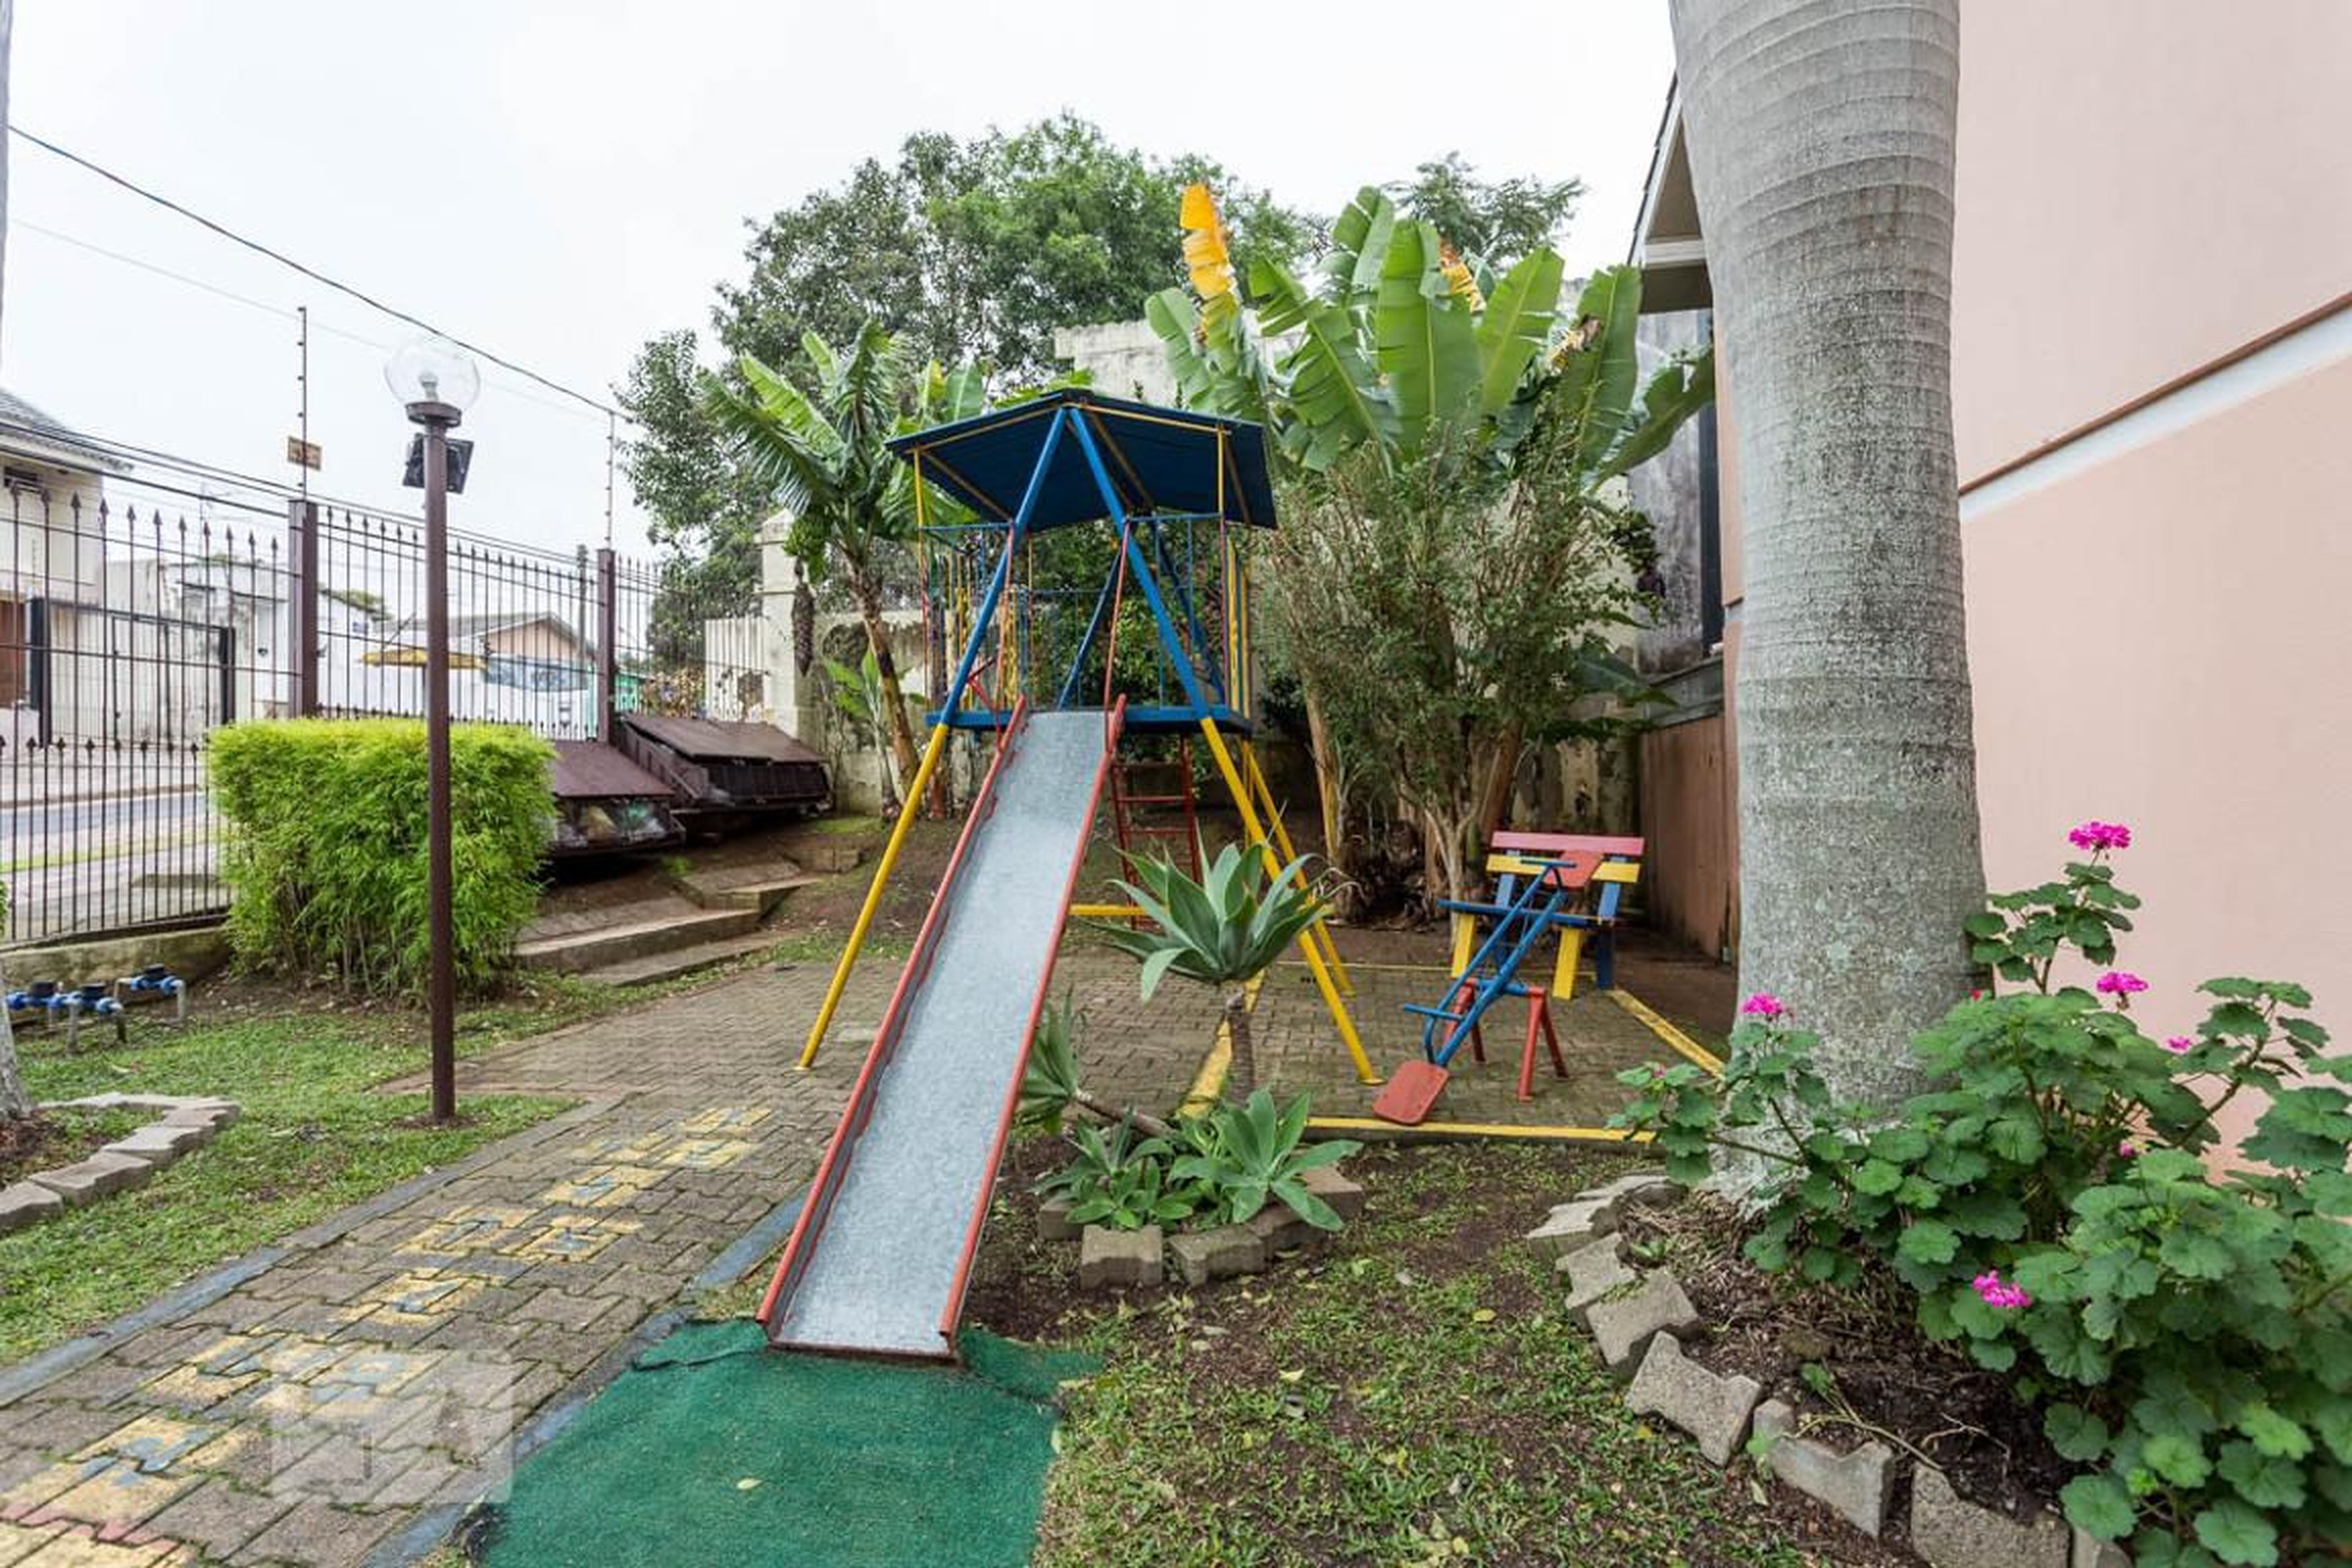 Playground - Ouro Preto